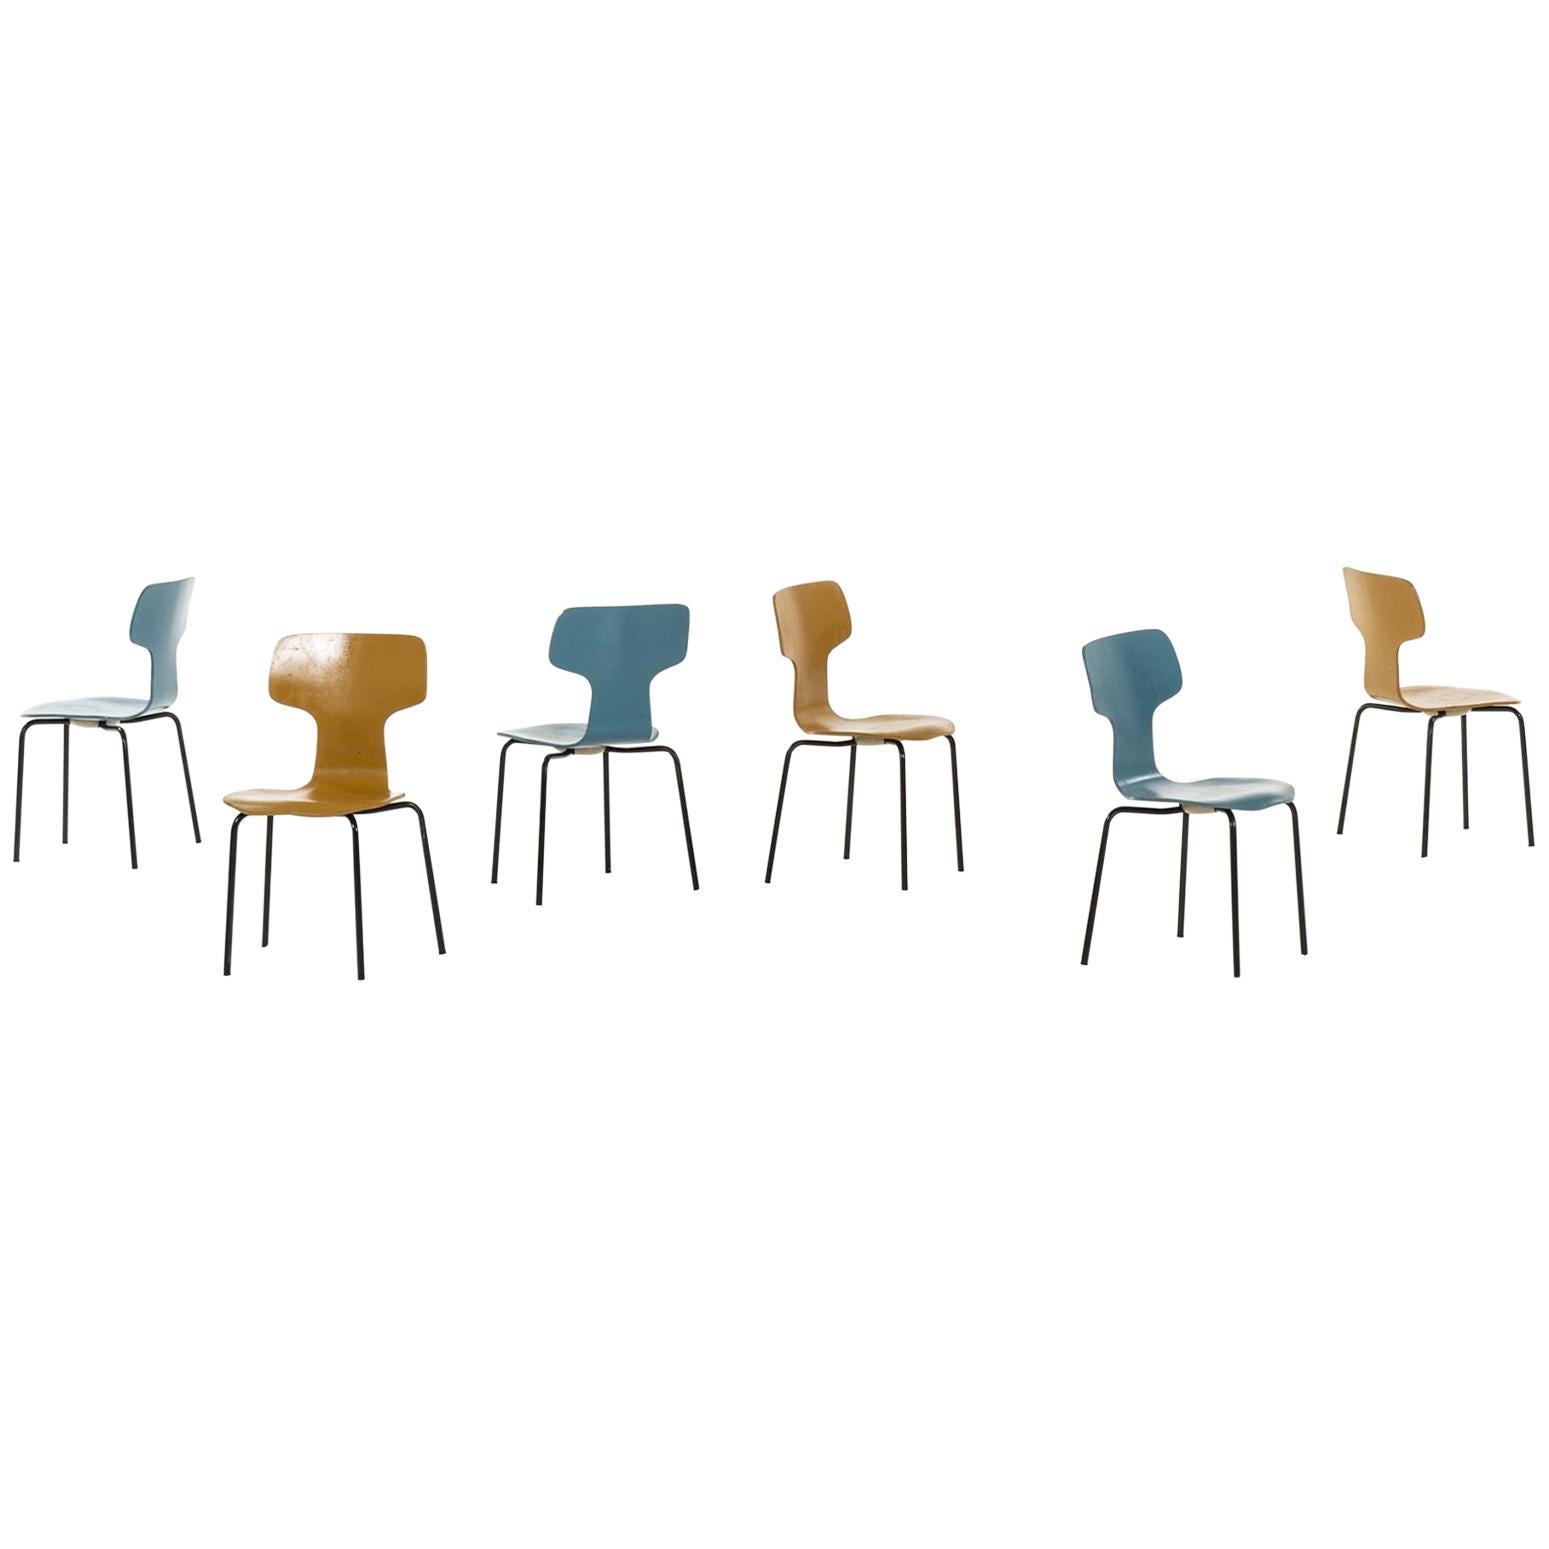 Kinder-T-Stühle von Arne Jacobsen, hergestellt von Fritz Hansen in Dänemark